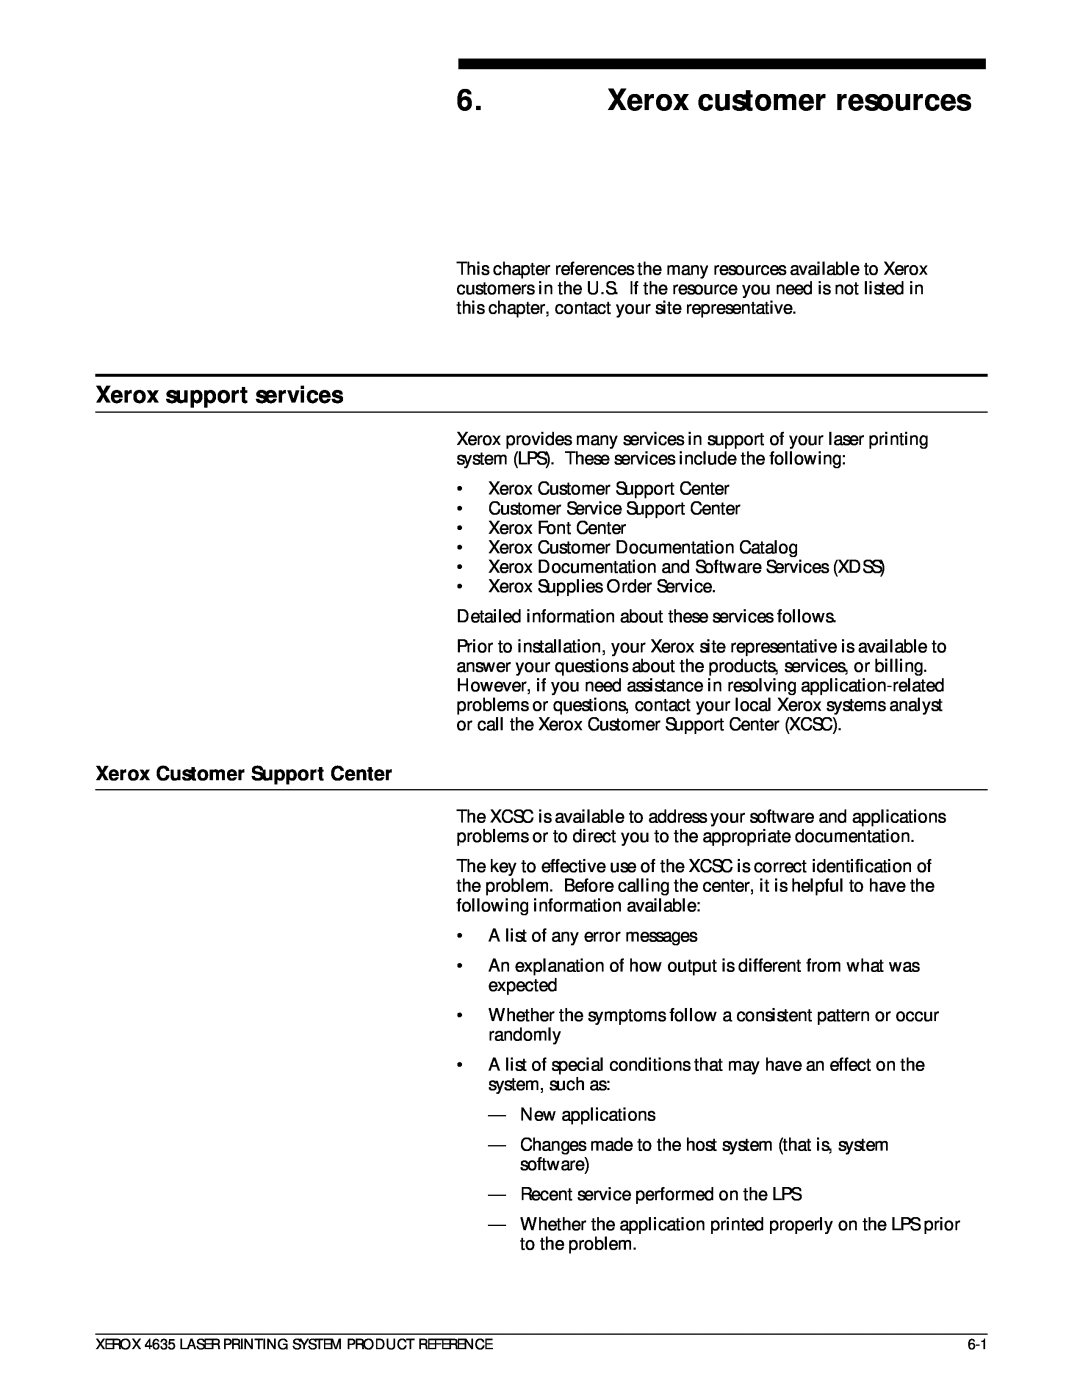 Xerox 721P83071 manual Xerox customer resources, Xerox support services, Xerox Customer Support Center 